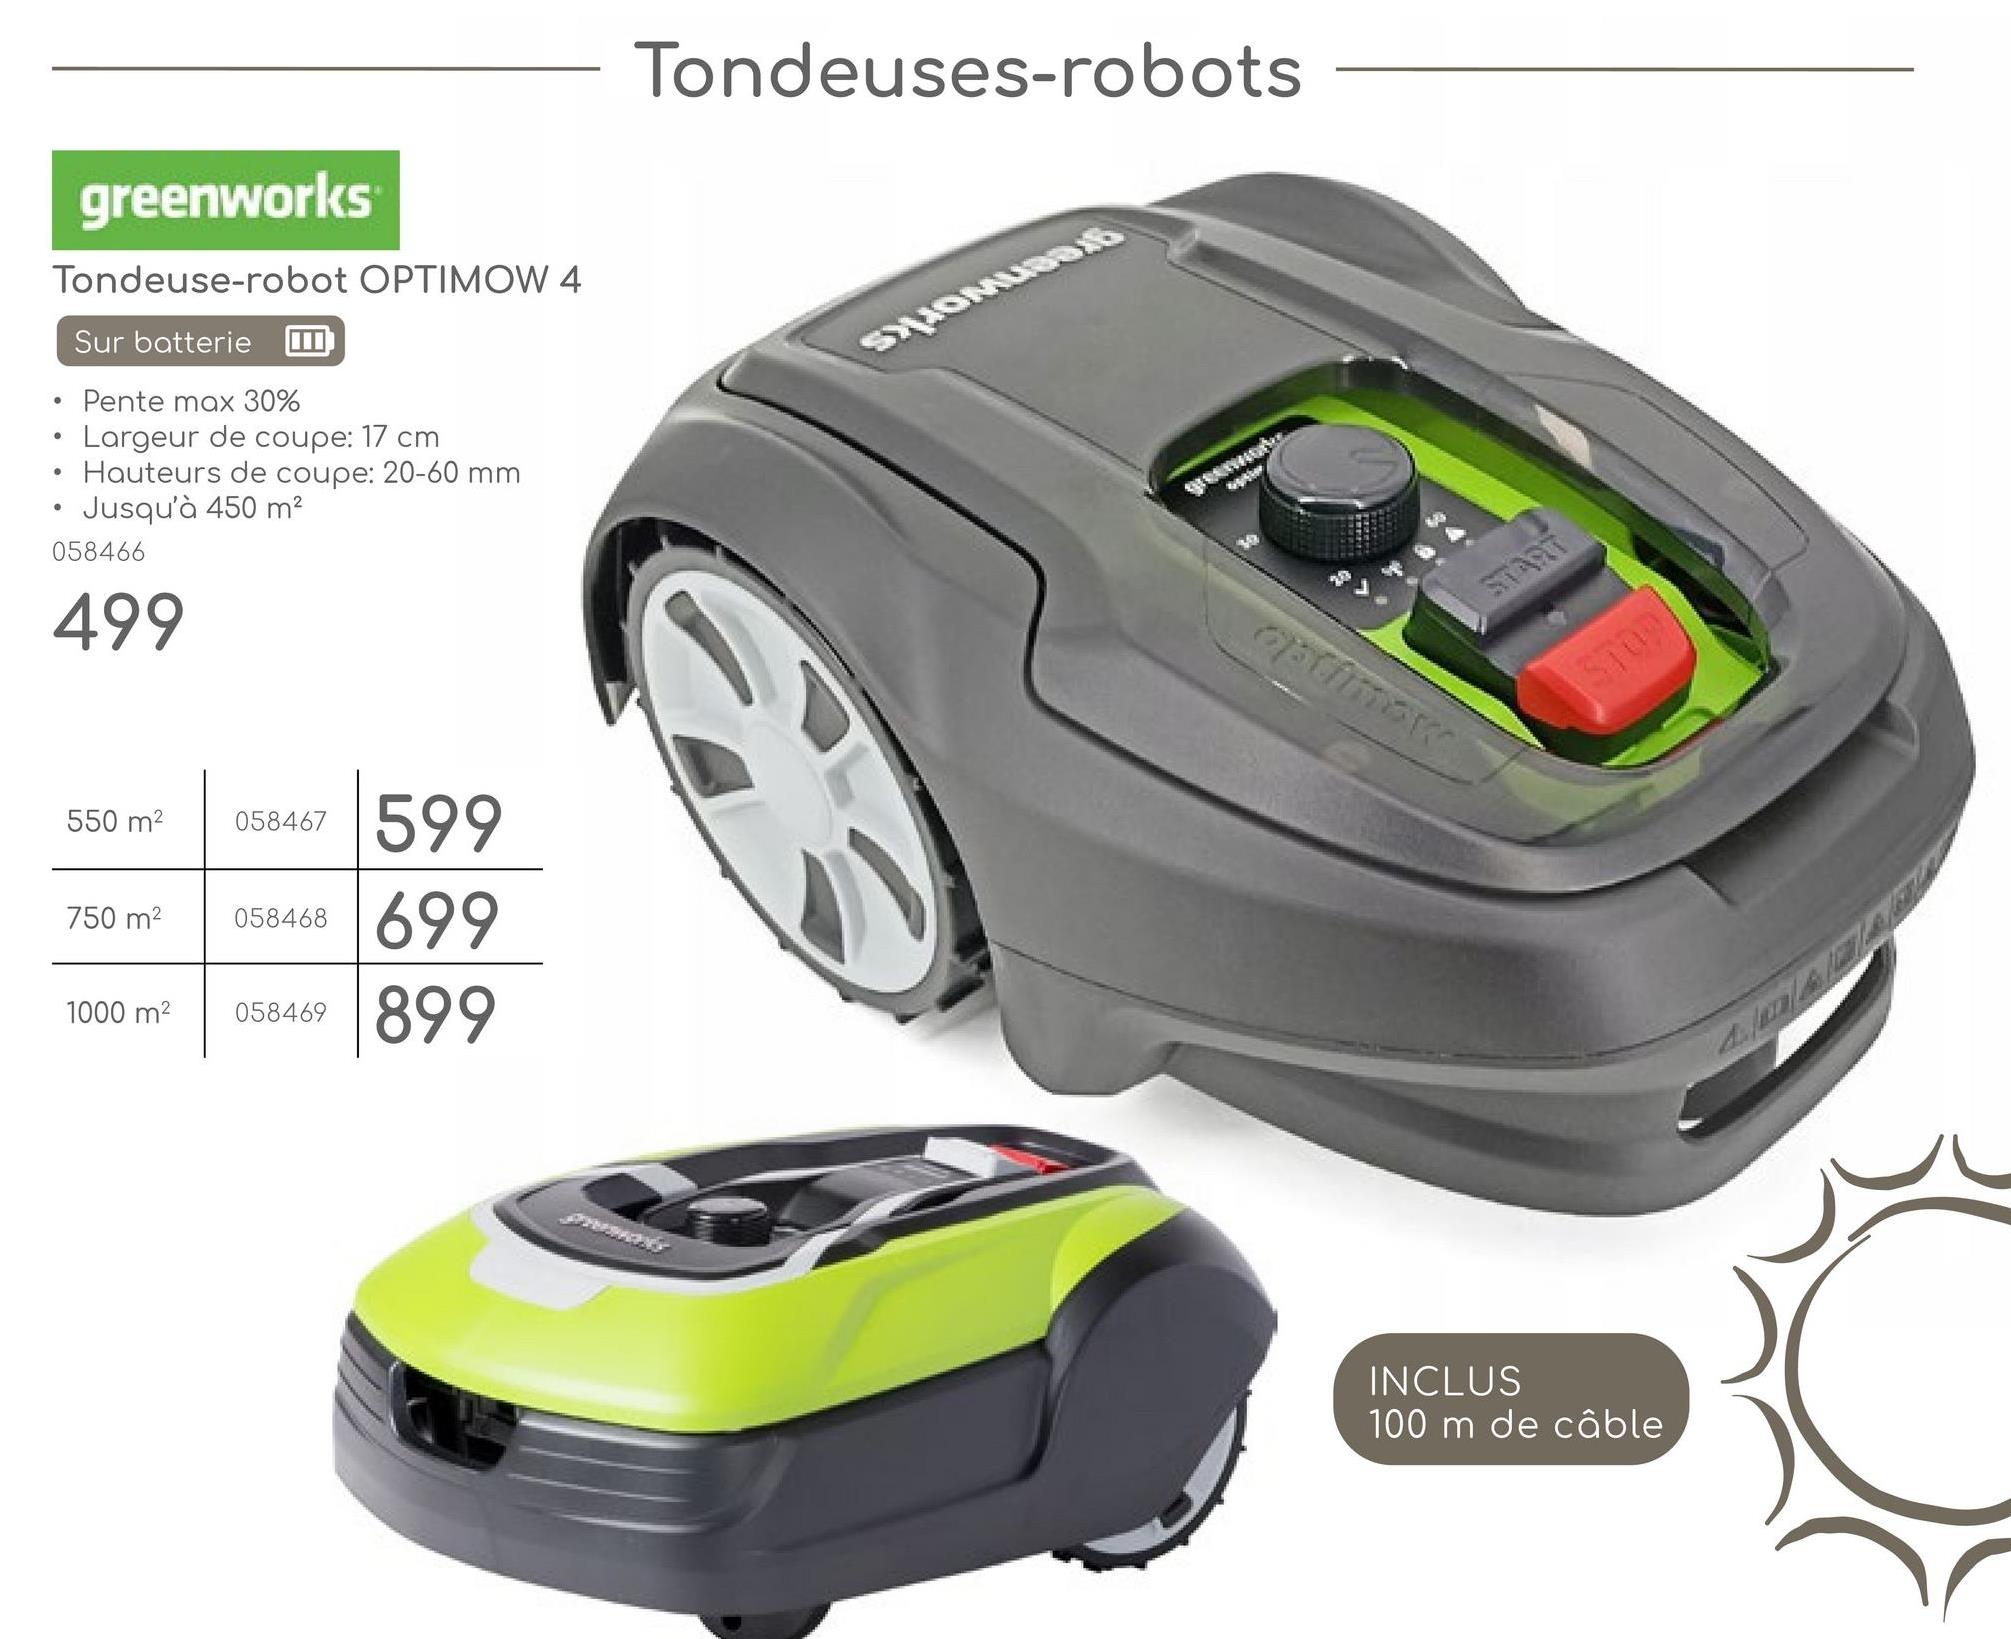 •
greenworks
Tondeuse-robot OPTIMOW 4
Sur batterie
Pente max 30%
Largeur de coupe: 17 cm
Hauteurs de coupe: 20-60 mm
Jusqu'à 450 m²
058466
499
550 m²
058467
599
750 m²
058468
1000 m²
058469
699
899
Tondeuses-robots
greenwo
optimax
START
INCLUS
100 m de câble
$109